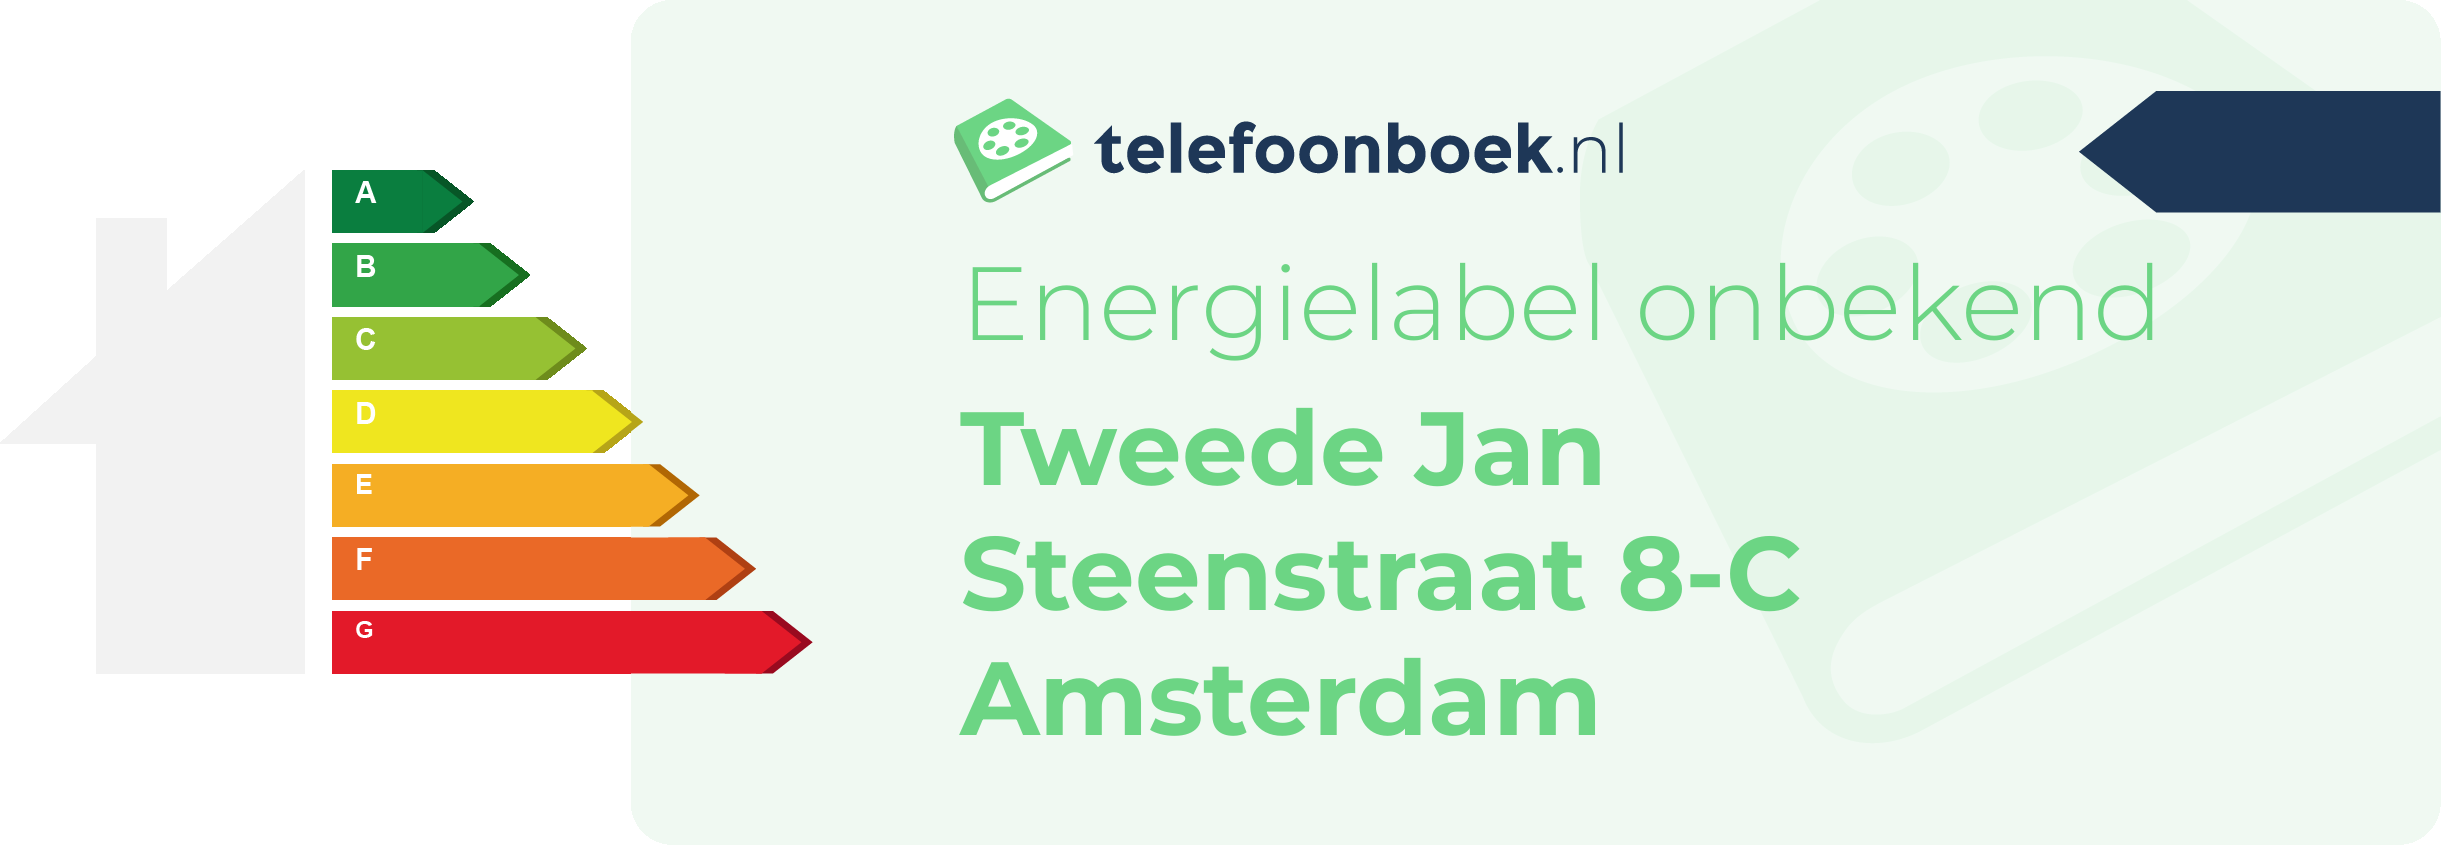 Energielabel Tweede Jan Steenstraat 8-C Amsterdam